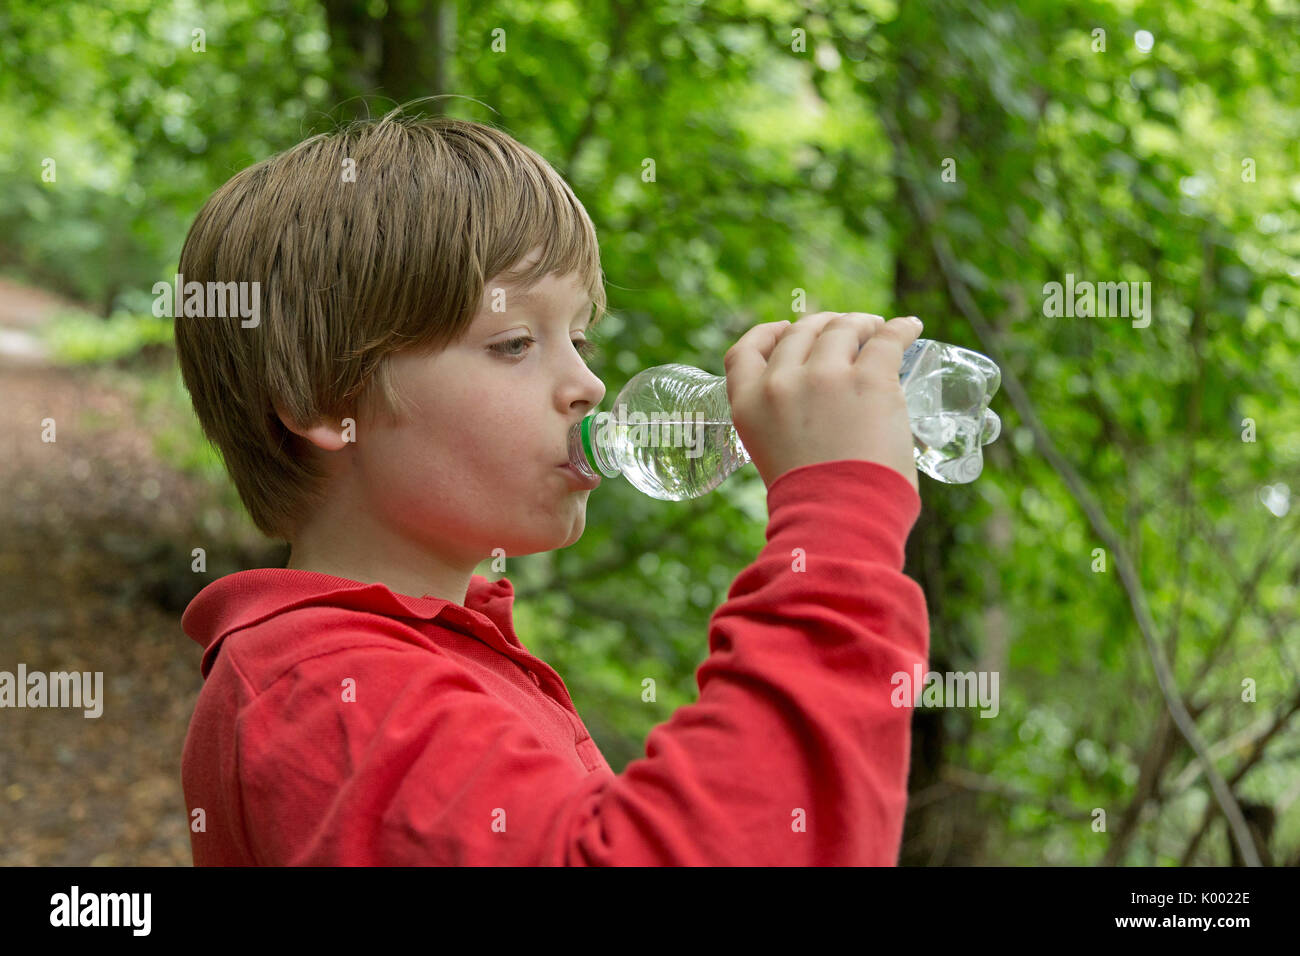 Jeune garçon de l'eau potable dans une forêt Banque D'Images